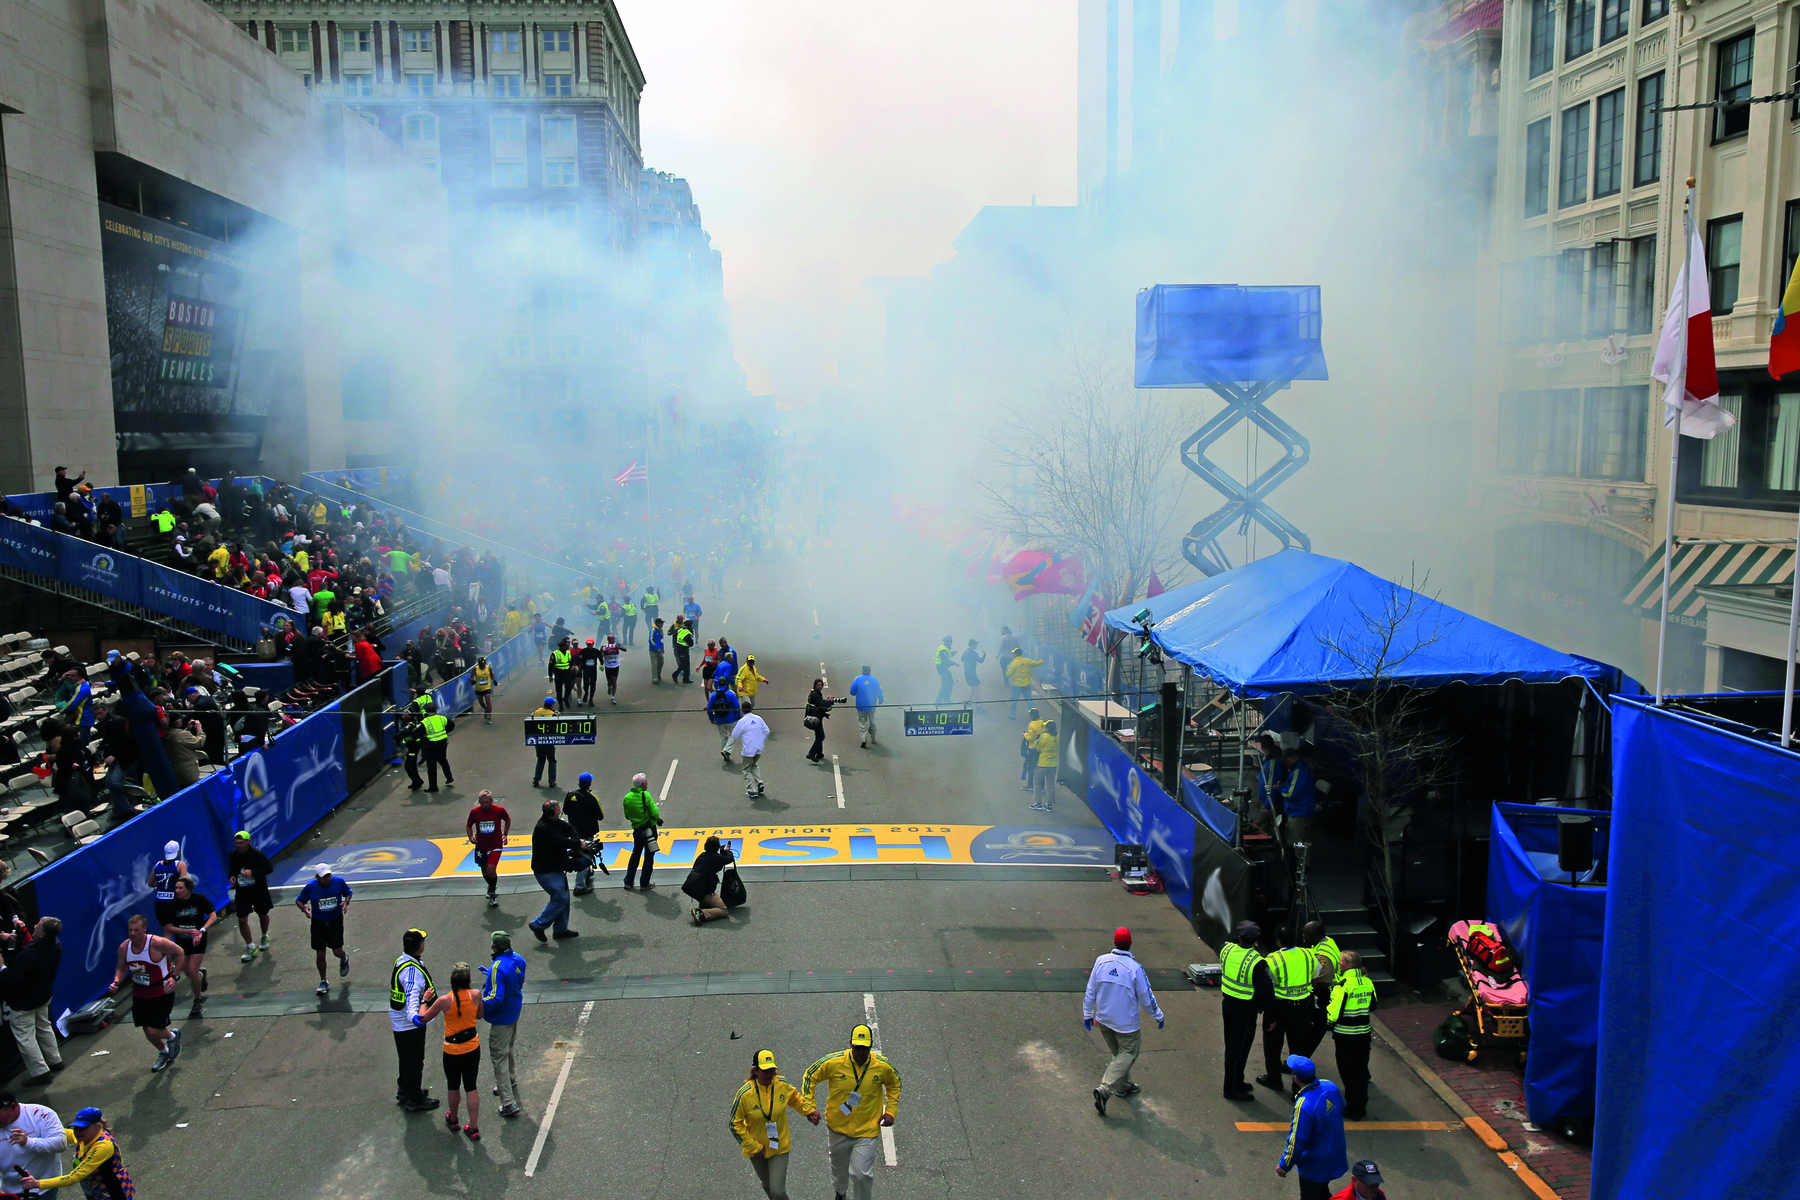 Fotografia. Vista aérea de uma rua com equipamentos azuis como barracas. Do lado esquerdo há uma arquibancada; no centro e nas laterais há diversas pessoas em pé. Ao fundo, uma cortina de fumaça branca.